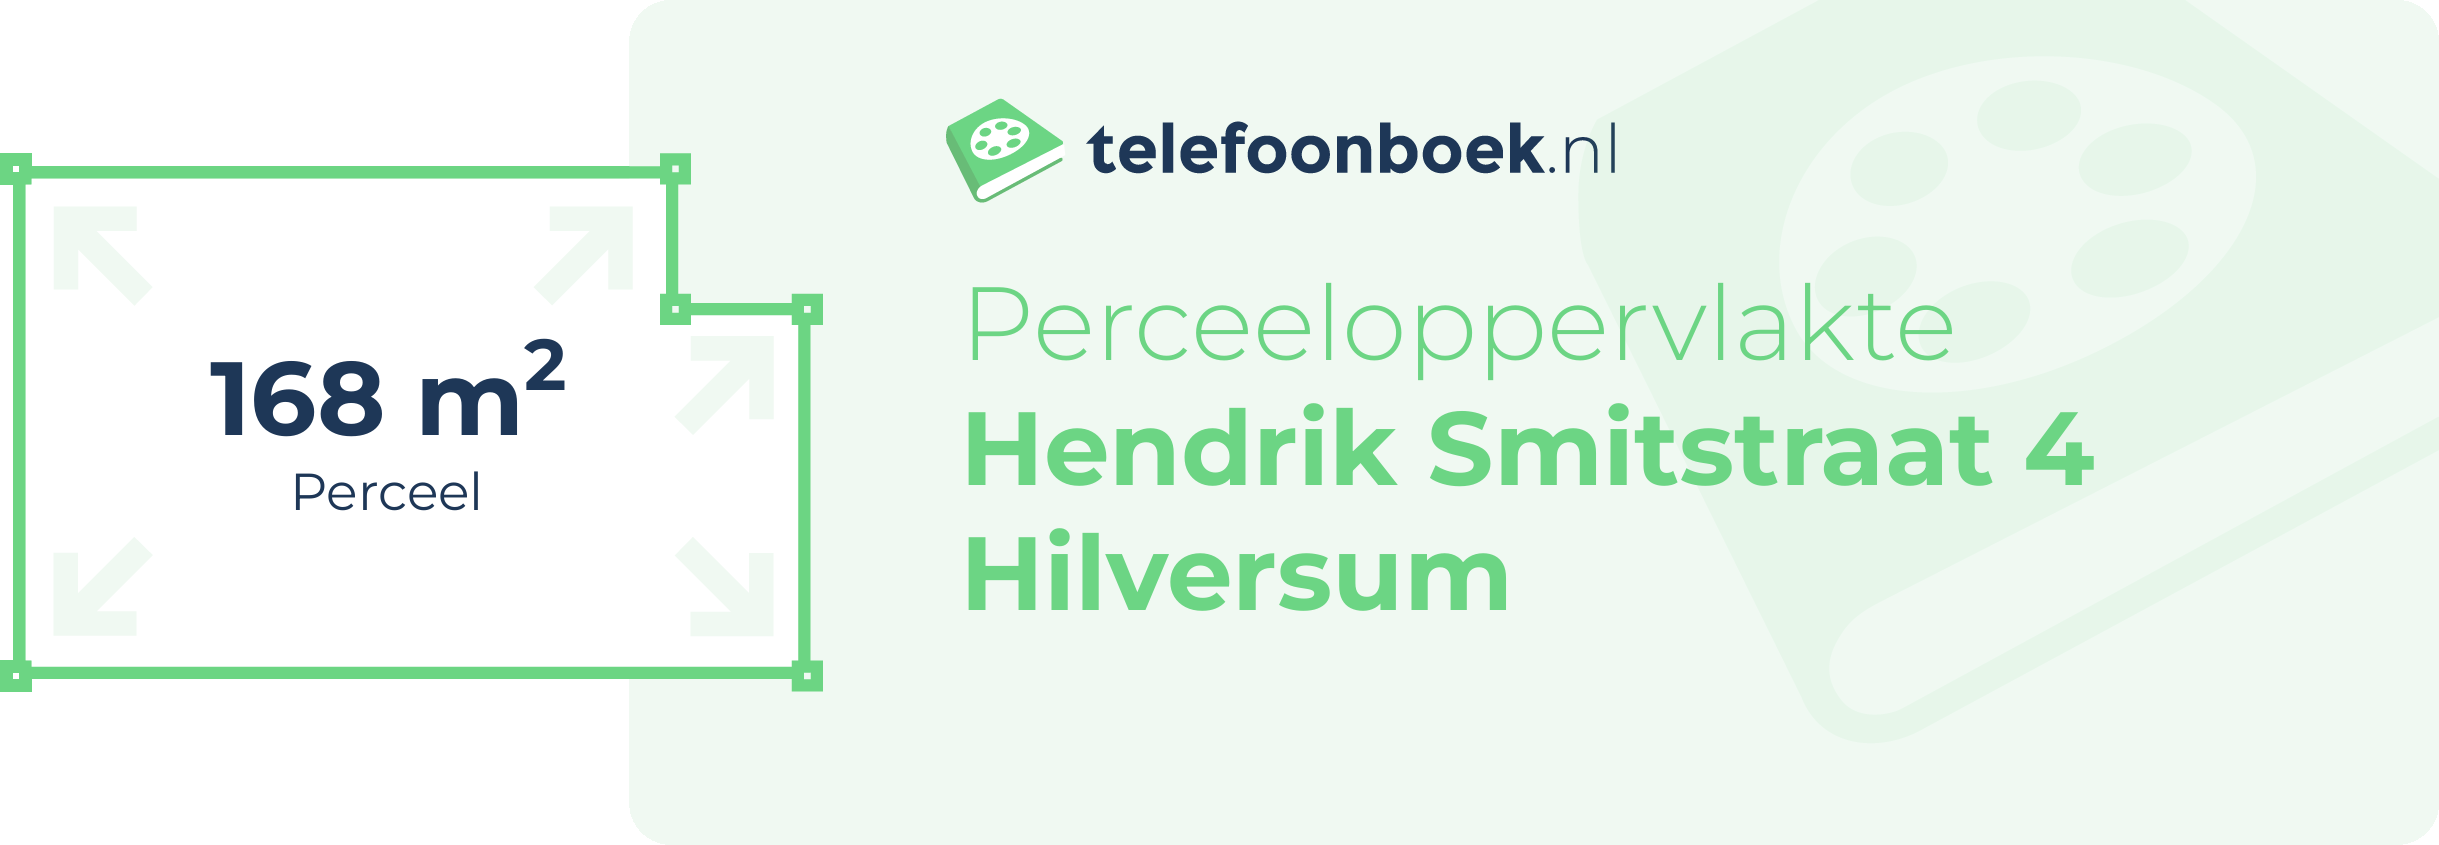 Perceeloppervlakte Hendrik Smitstraat 4 Hilversum